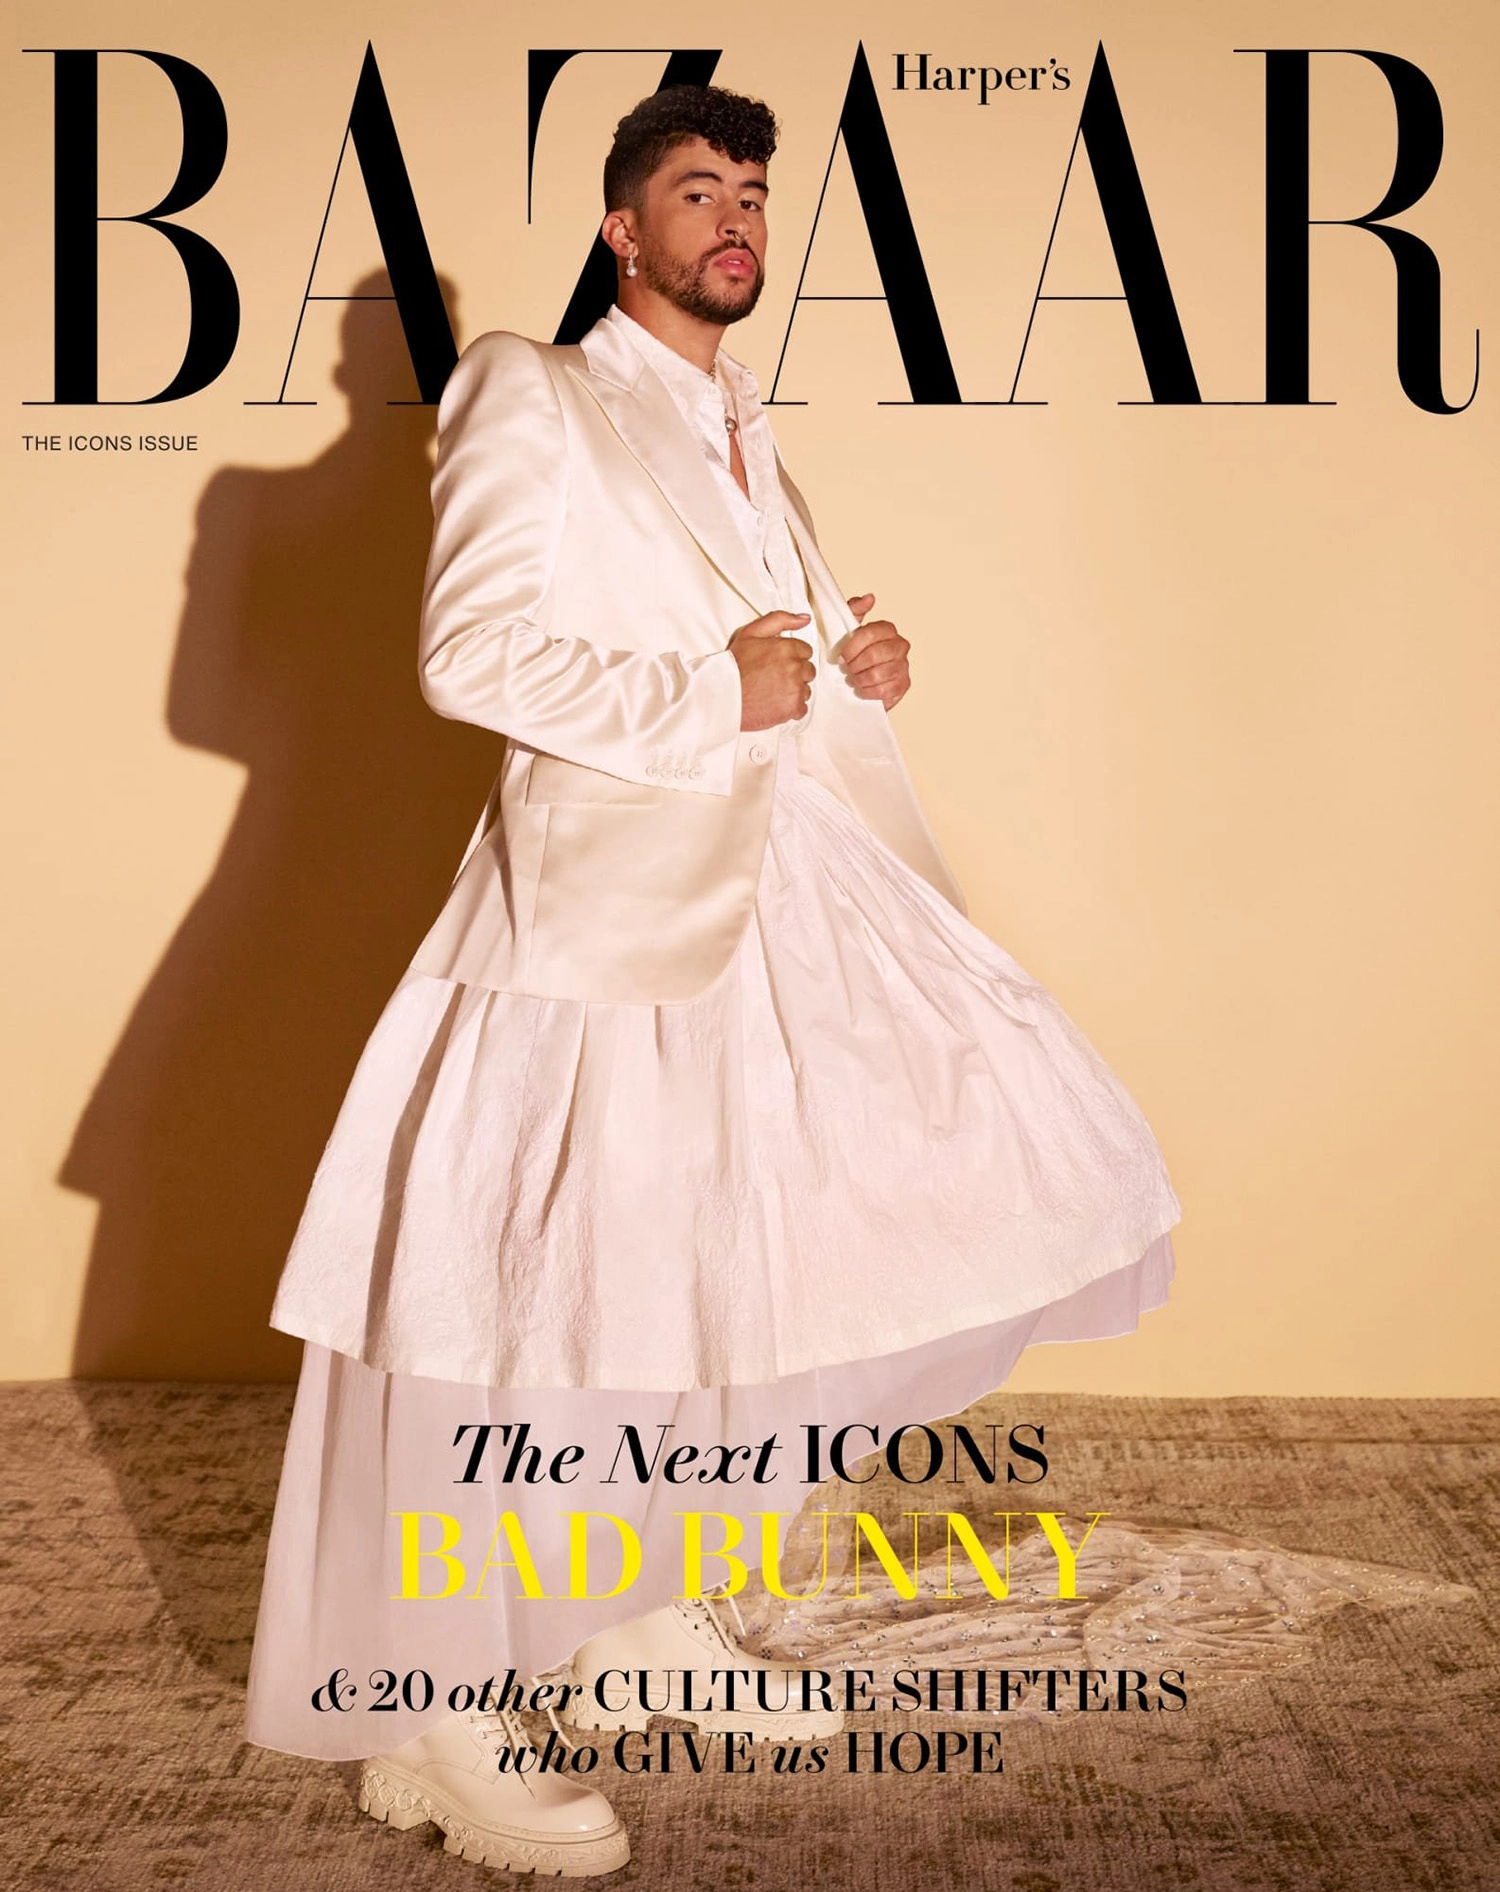 Harper’s Bazaar US September 2022 covers by John Edmonds